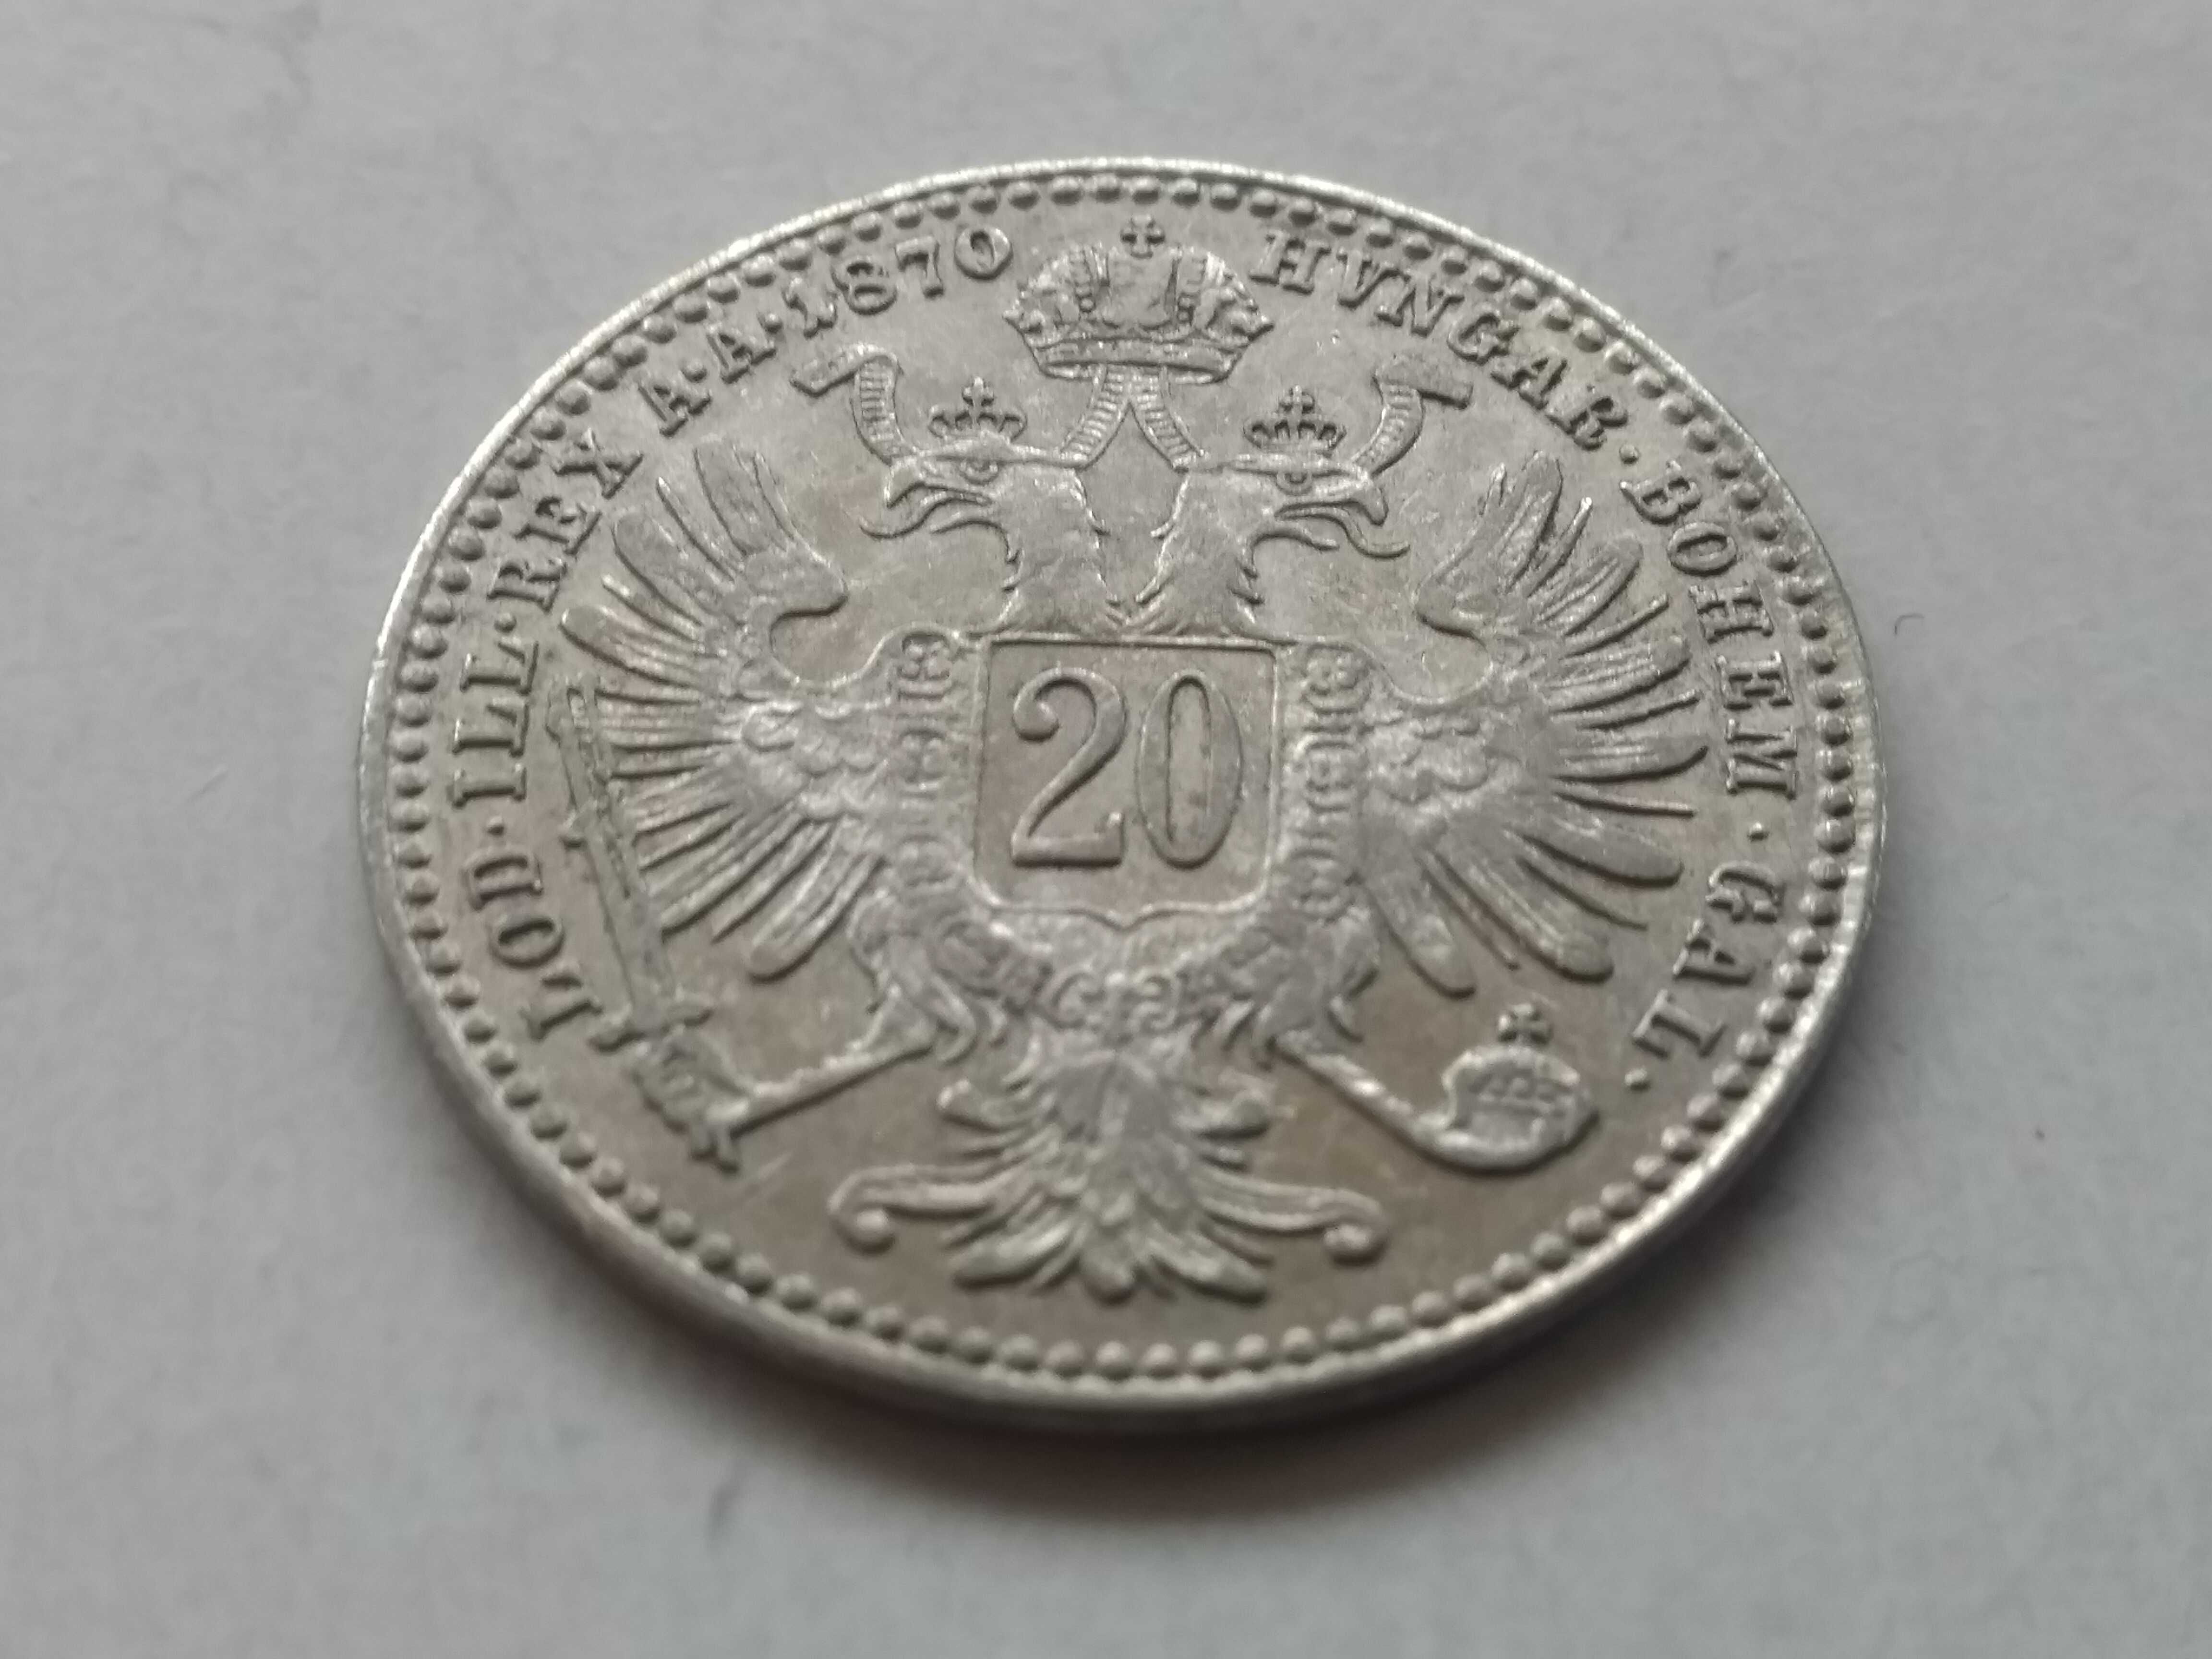 Austro-Węgry, 20 krajcarów 1870. Piękna moneta. stan 3+